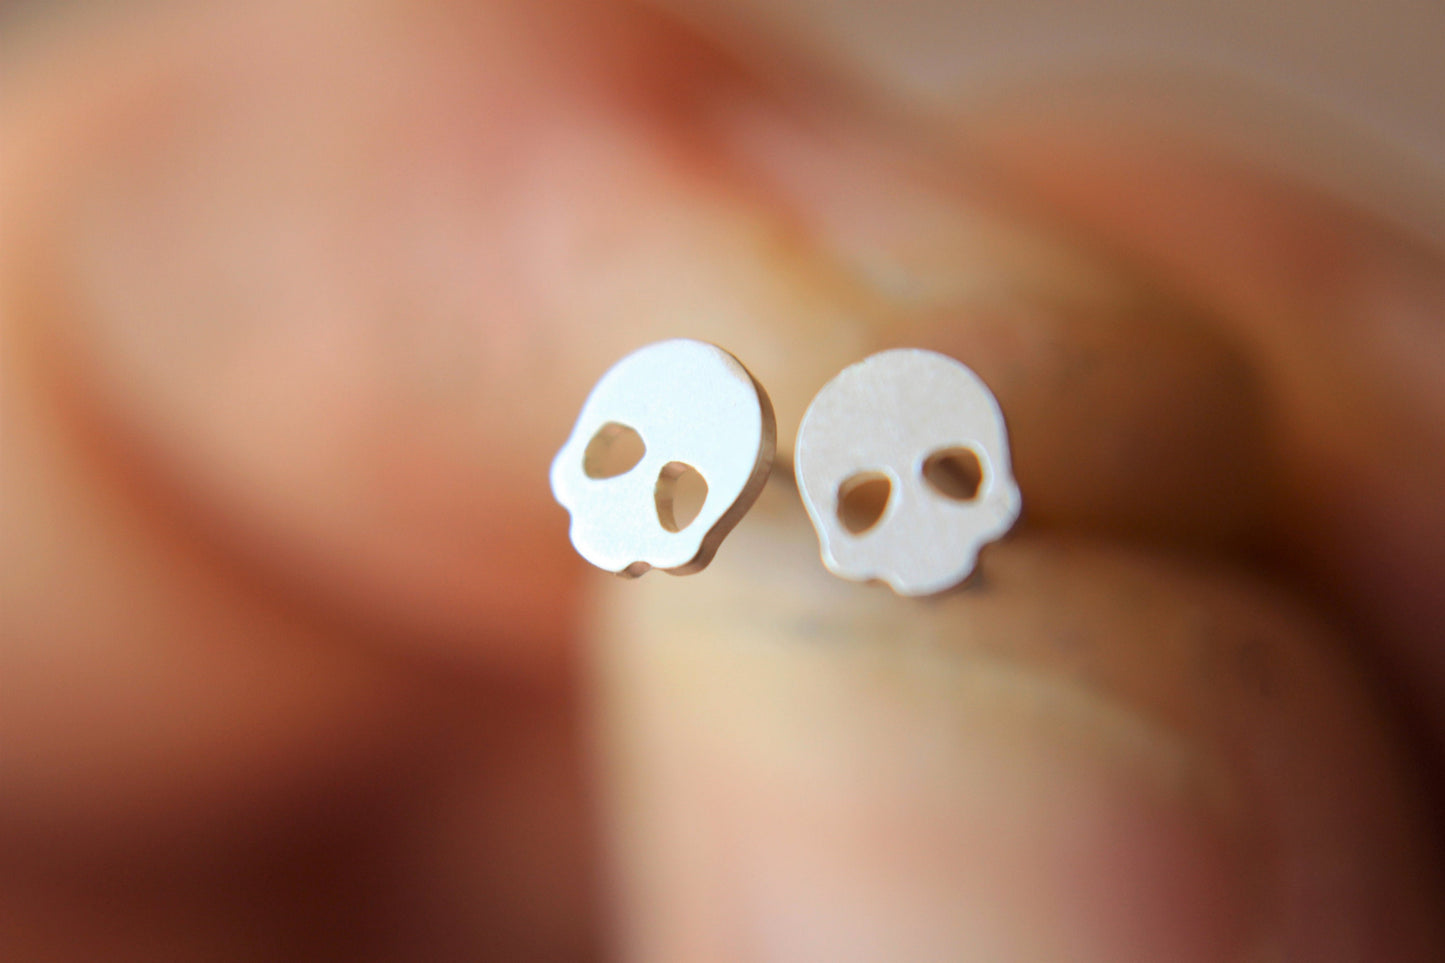 Tiny Skull Earrings, Skull Earrings, Tiny Skull Jewelry, Skull Jewelry, Skeleton Jewelry, Halloween, Skeleton Studs, Tiny Skull Stud Earring